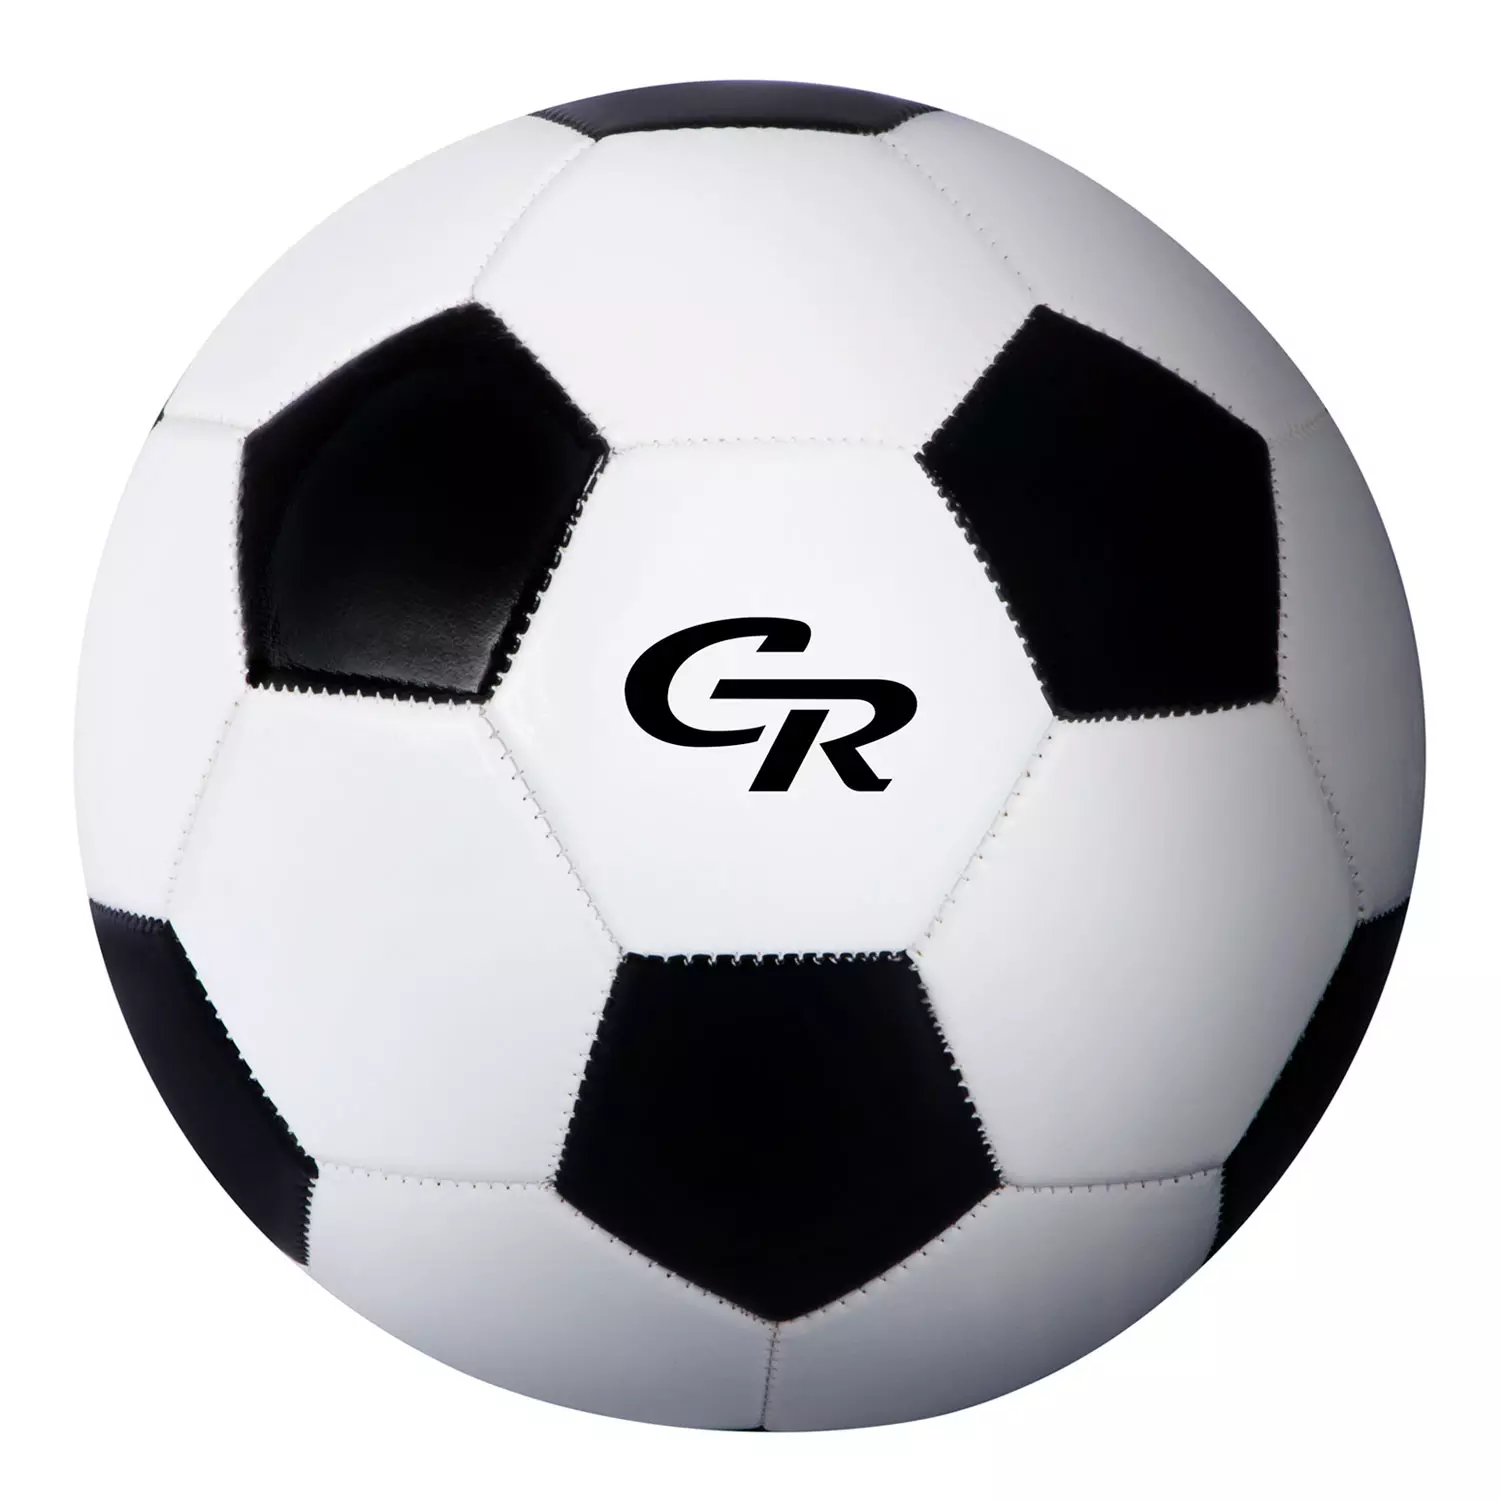 Мяч футбольный City Ride, 2-слойный, сшитые панели, ПВХ, 280г, размер 5, диаметр 22 смJB4300101